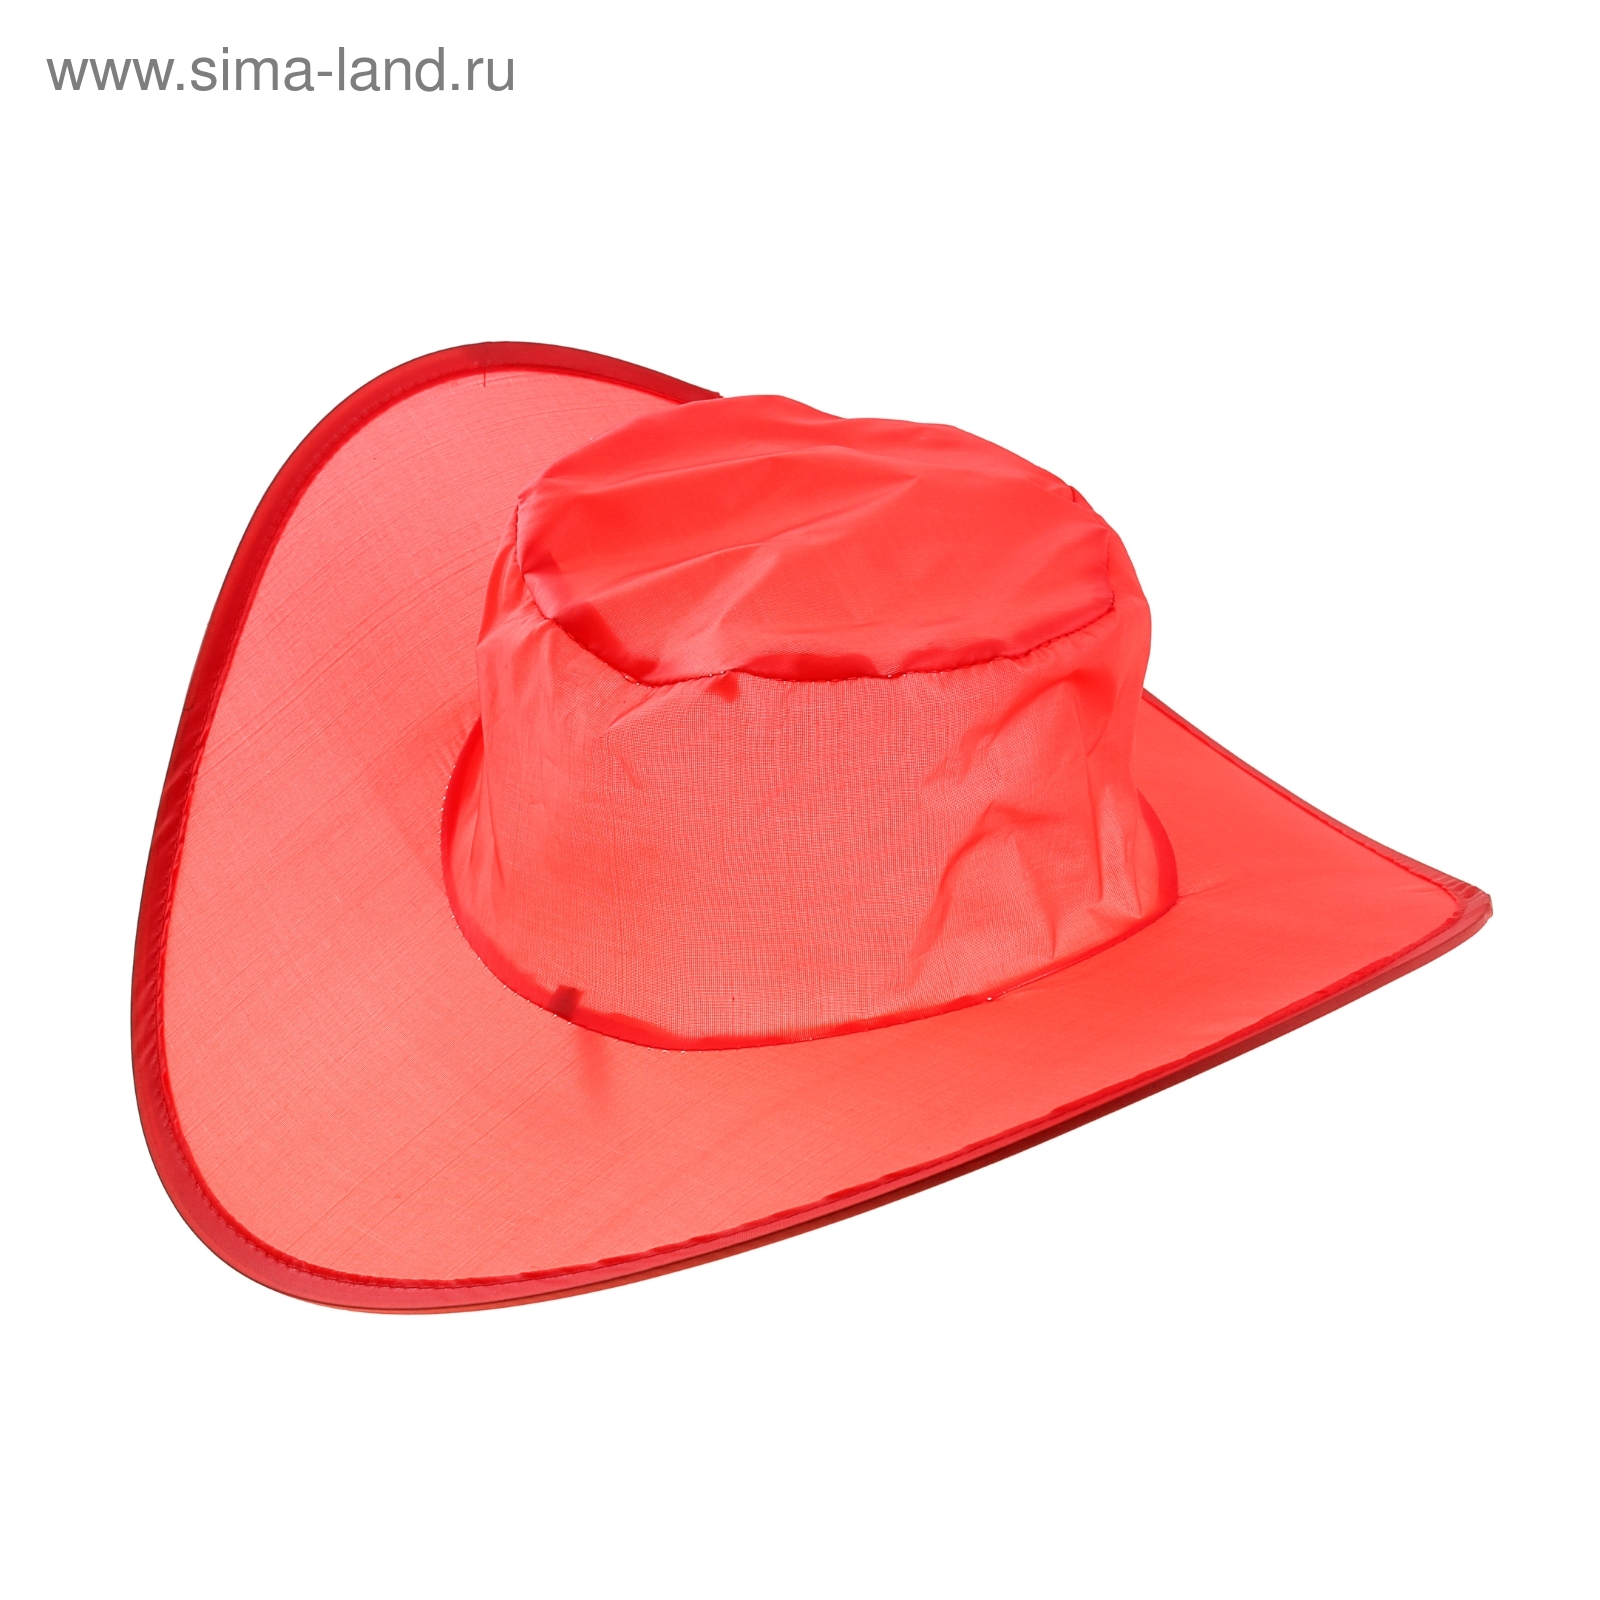 Шляпа складная в чехле, цвет красный, обхват головы 58 см, ширина полей 9 см